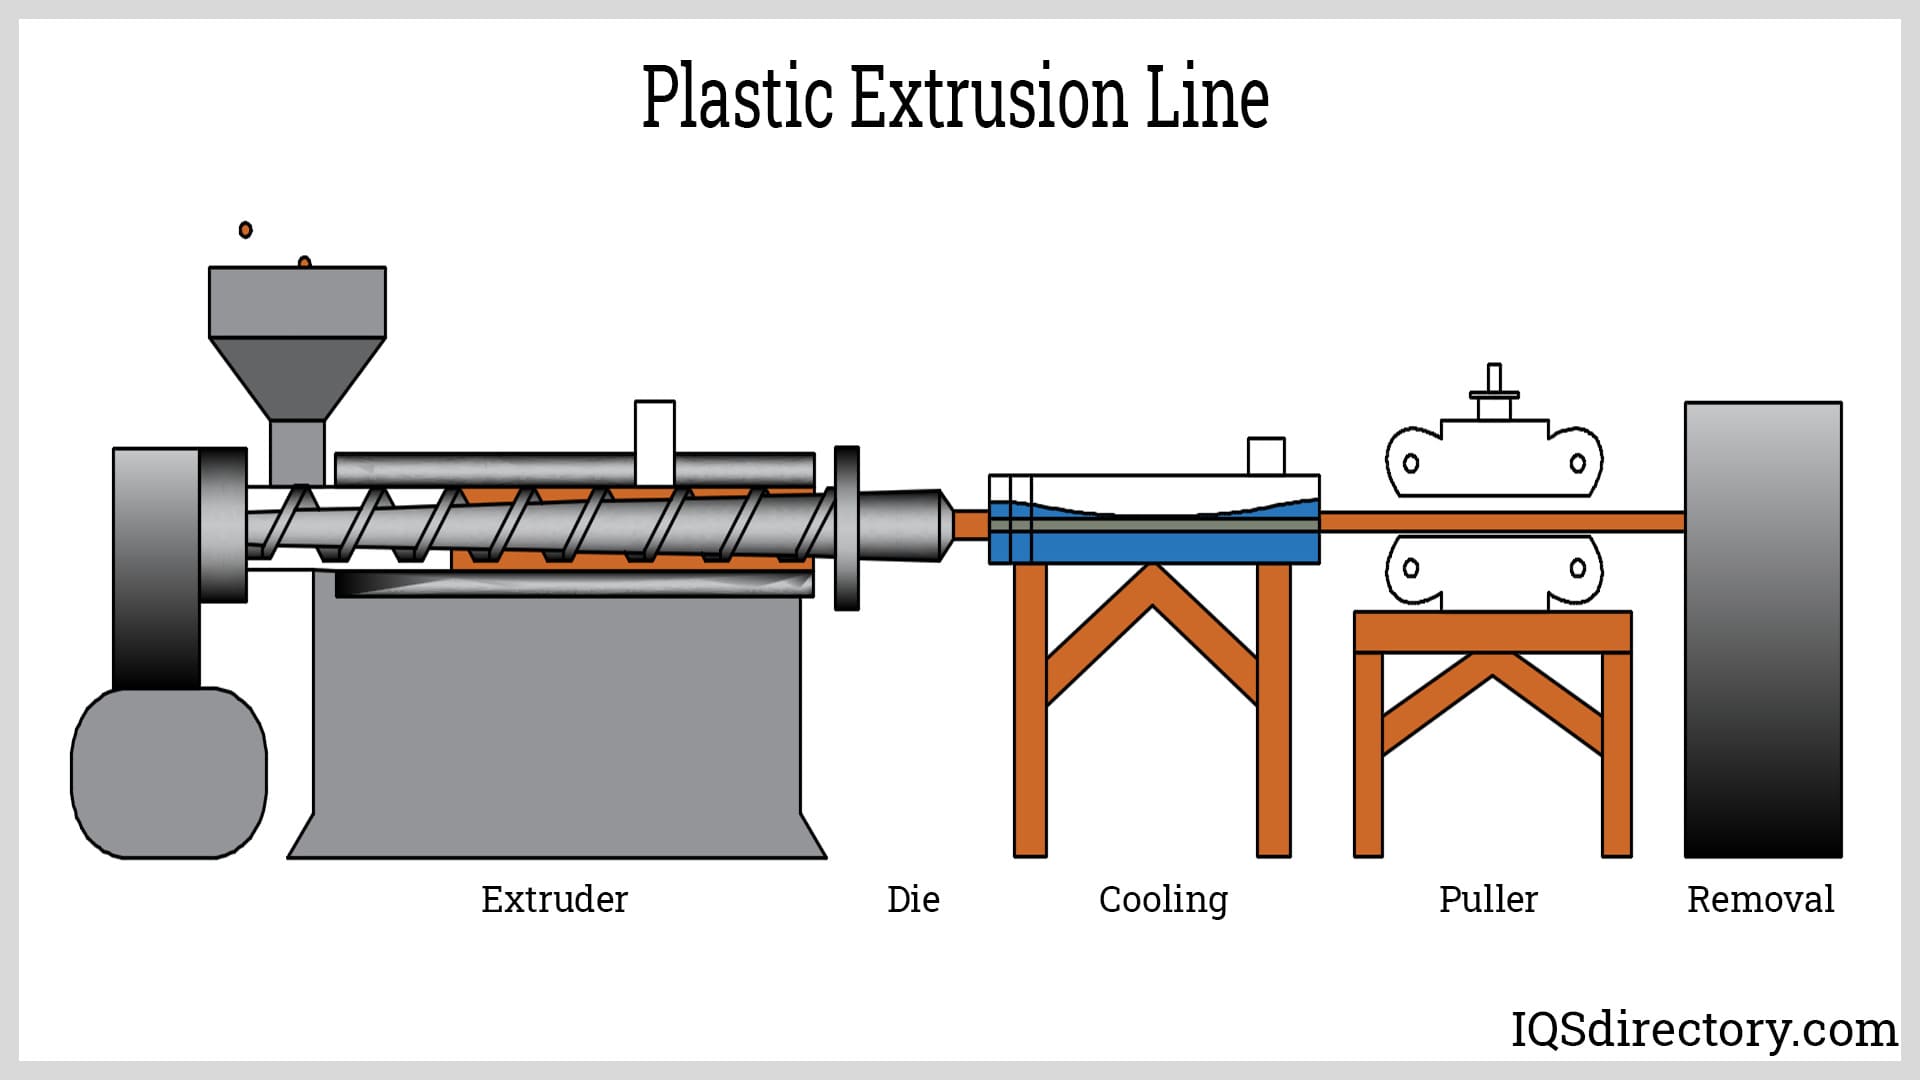 Plastic Extrusion Line